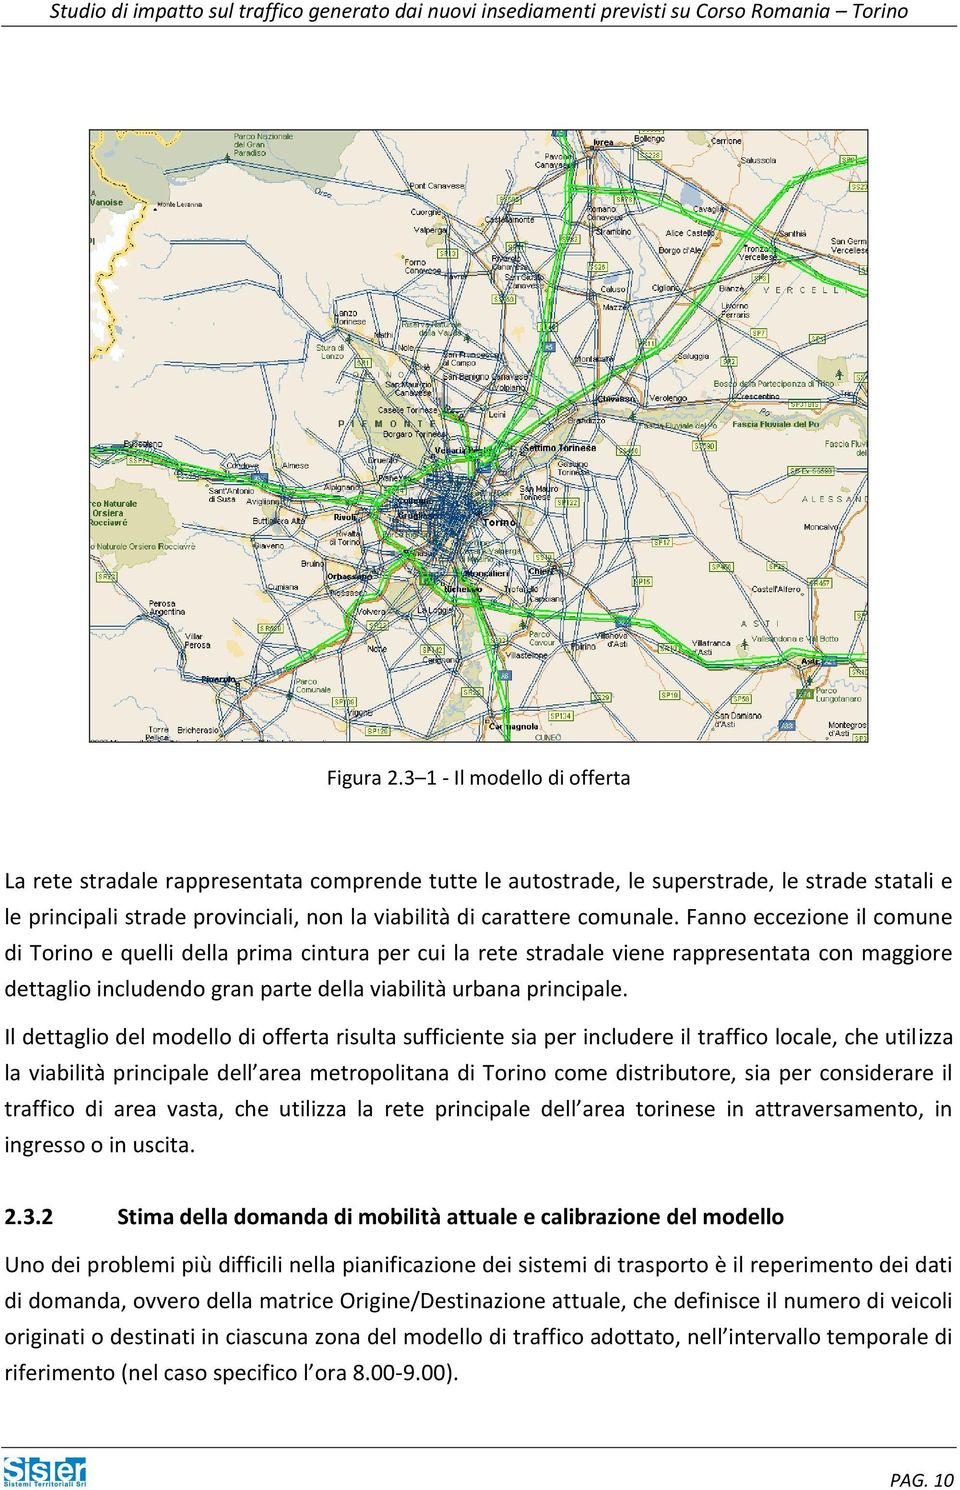 Fanno eccezione il comune di Torino e quelli della prima cintura per cui la rete stradale viene rappresentata con maggiore dettaglio includendo gran parte della viabilità urbana principale.